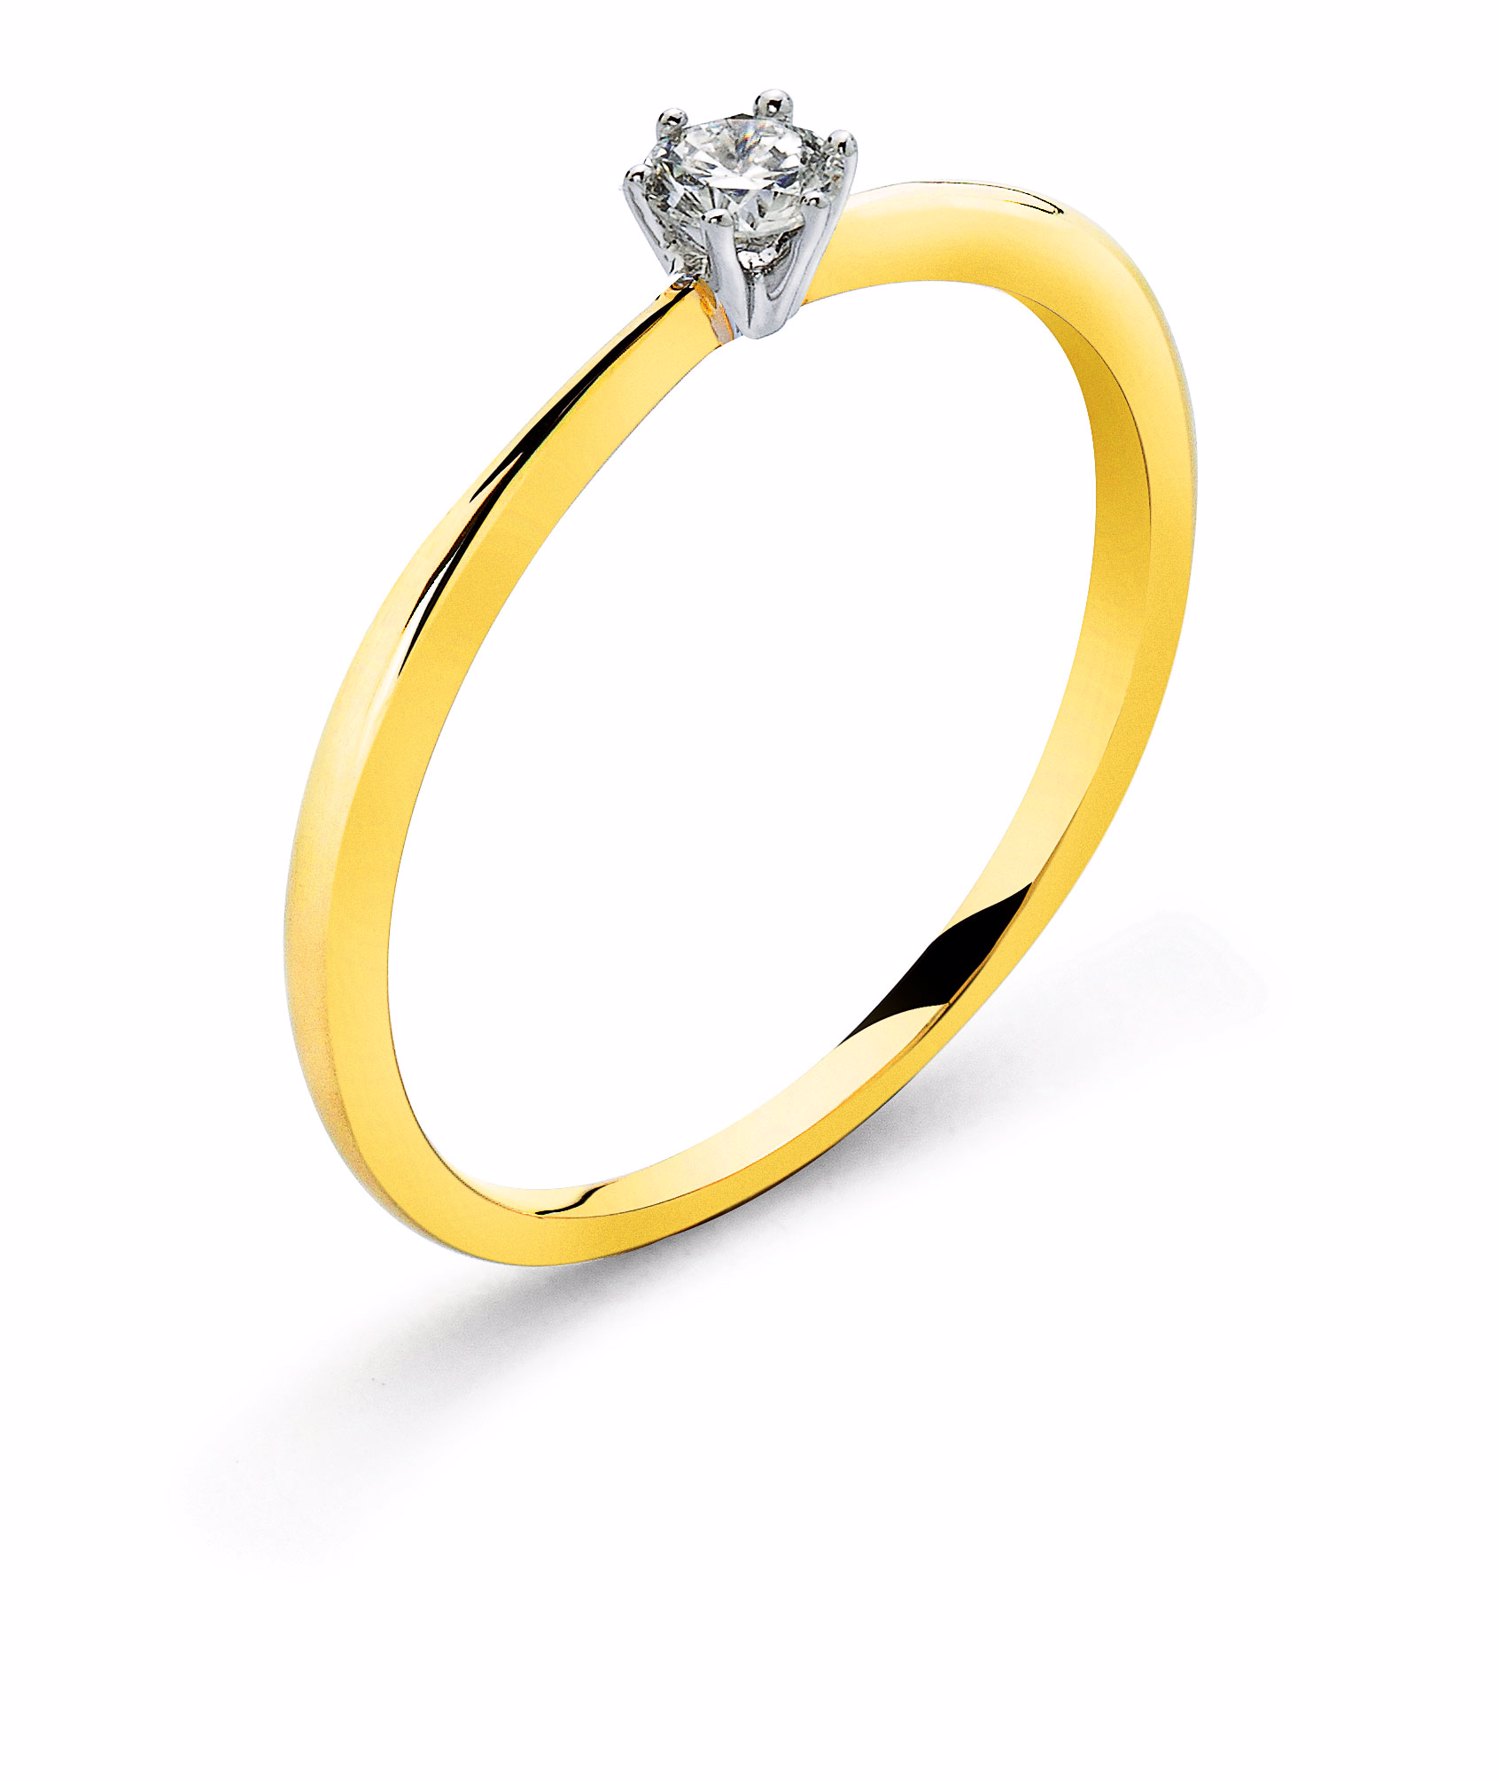 AURONOS Prestige Bague solitaire en or jaune 18K, sertie d'un diamant en or blanc 0.10ct